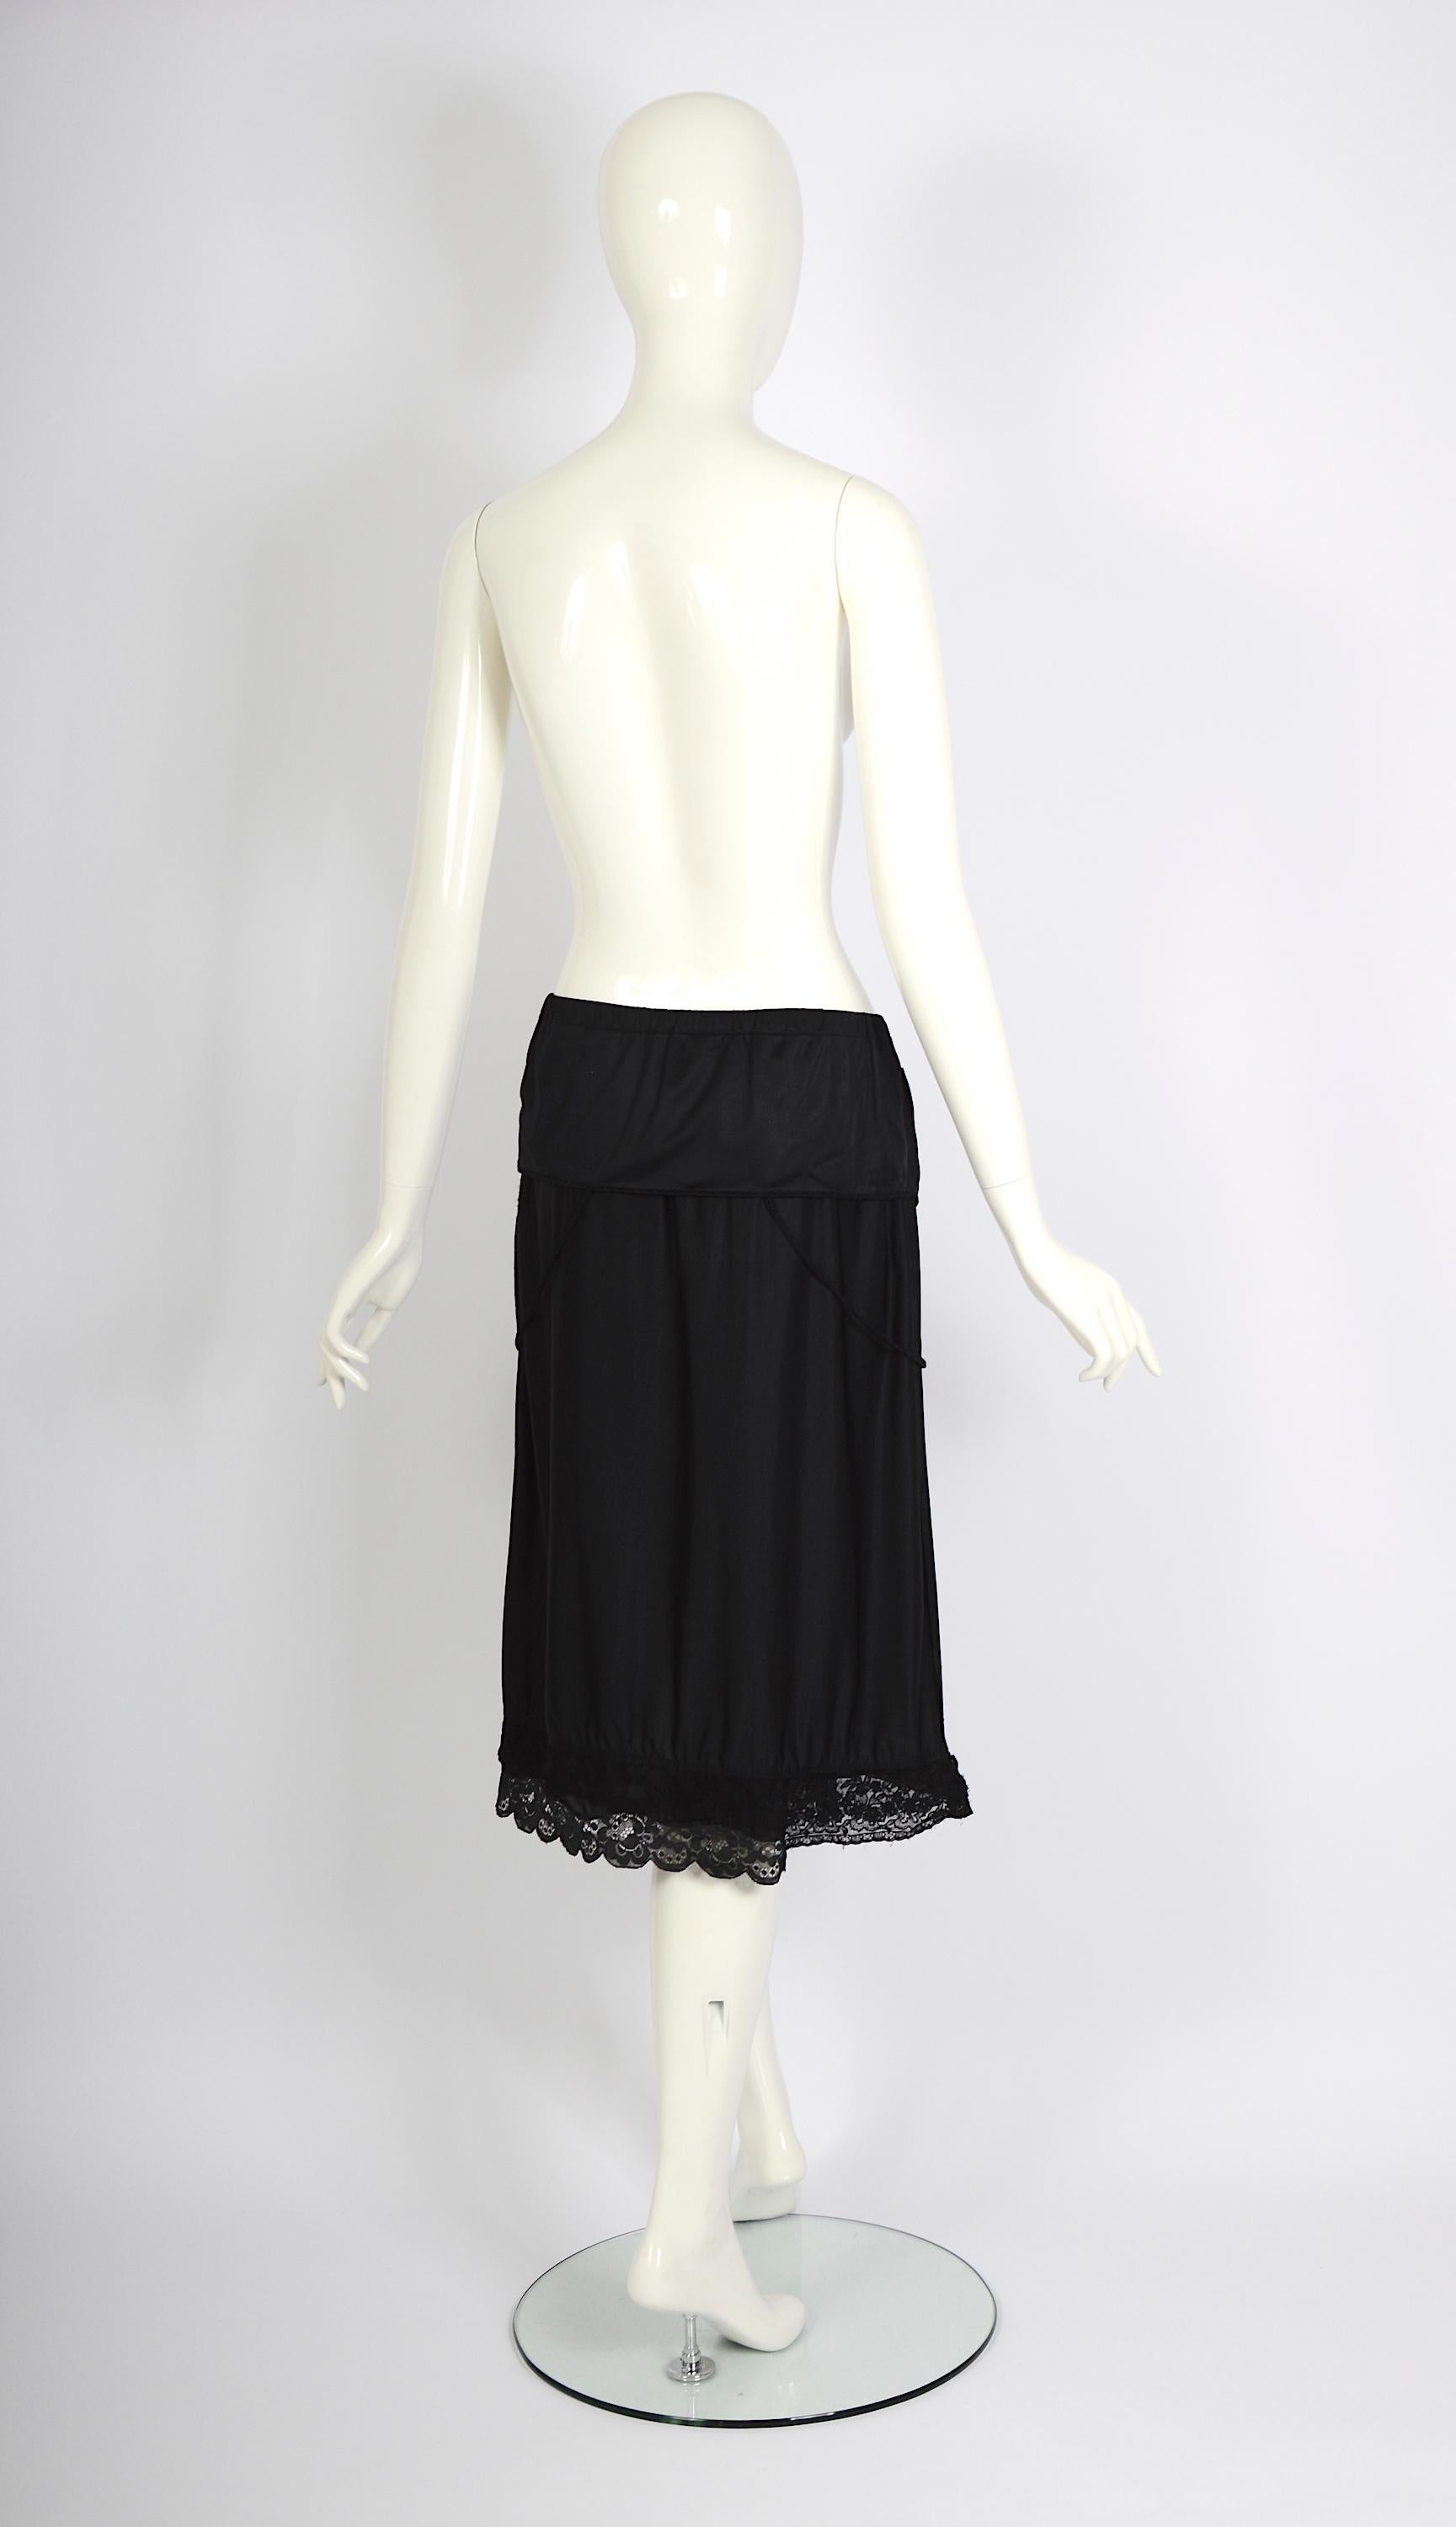 Vintage Martin Margiela artisanal ss 2003 runway black folded dress skirt For Sale 2